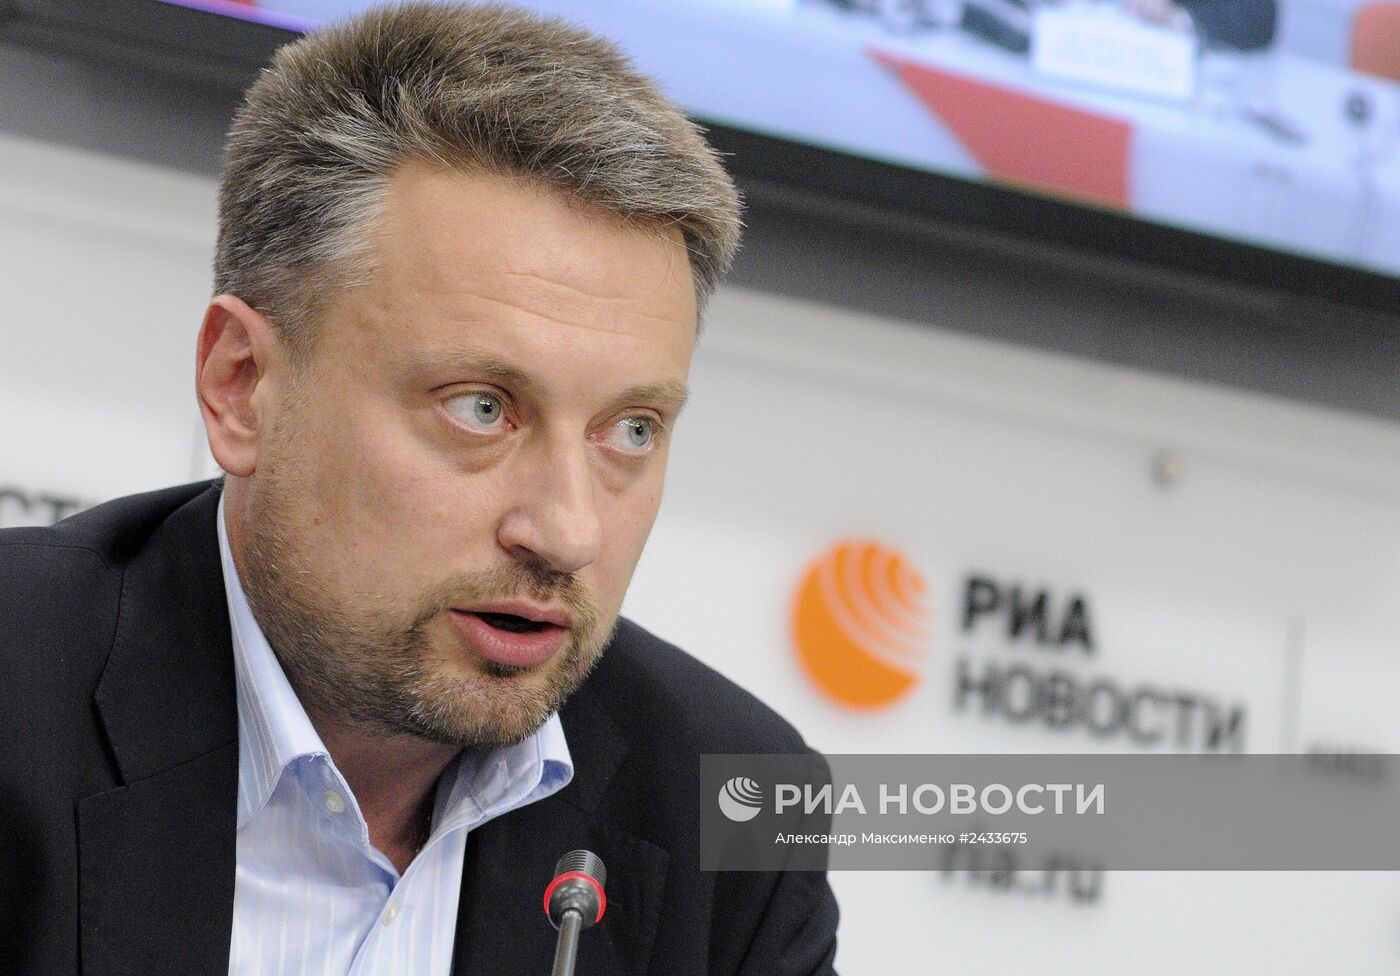 Пресс-конференция "Газ: мир или война?" в Киеве